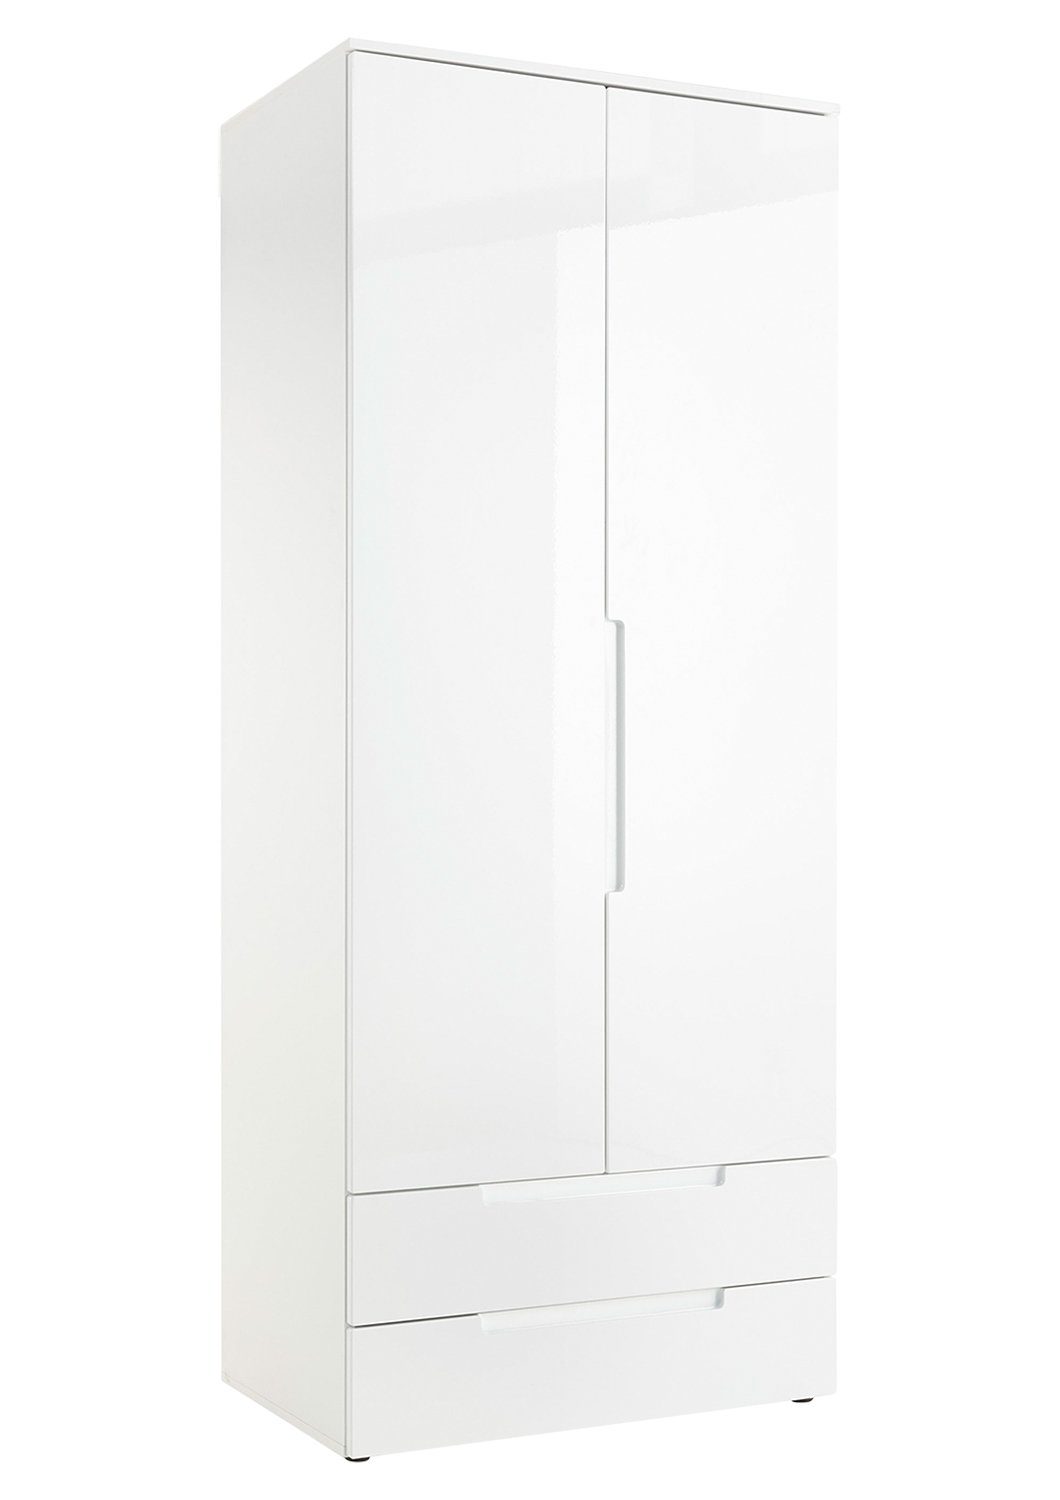 Pol-Power Drehtürenschrank Kleiderschrank SPICE, B 846 cm x H 208 cm, Weiß  Hochglanz, 2 Türen, 2 Schubladen, mit 1 Kleiderstange und 1 Einlegeboden